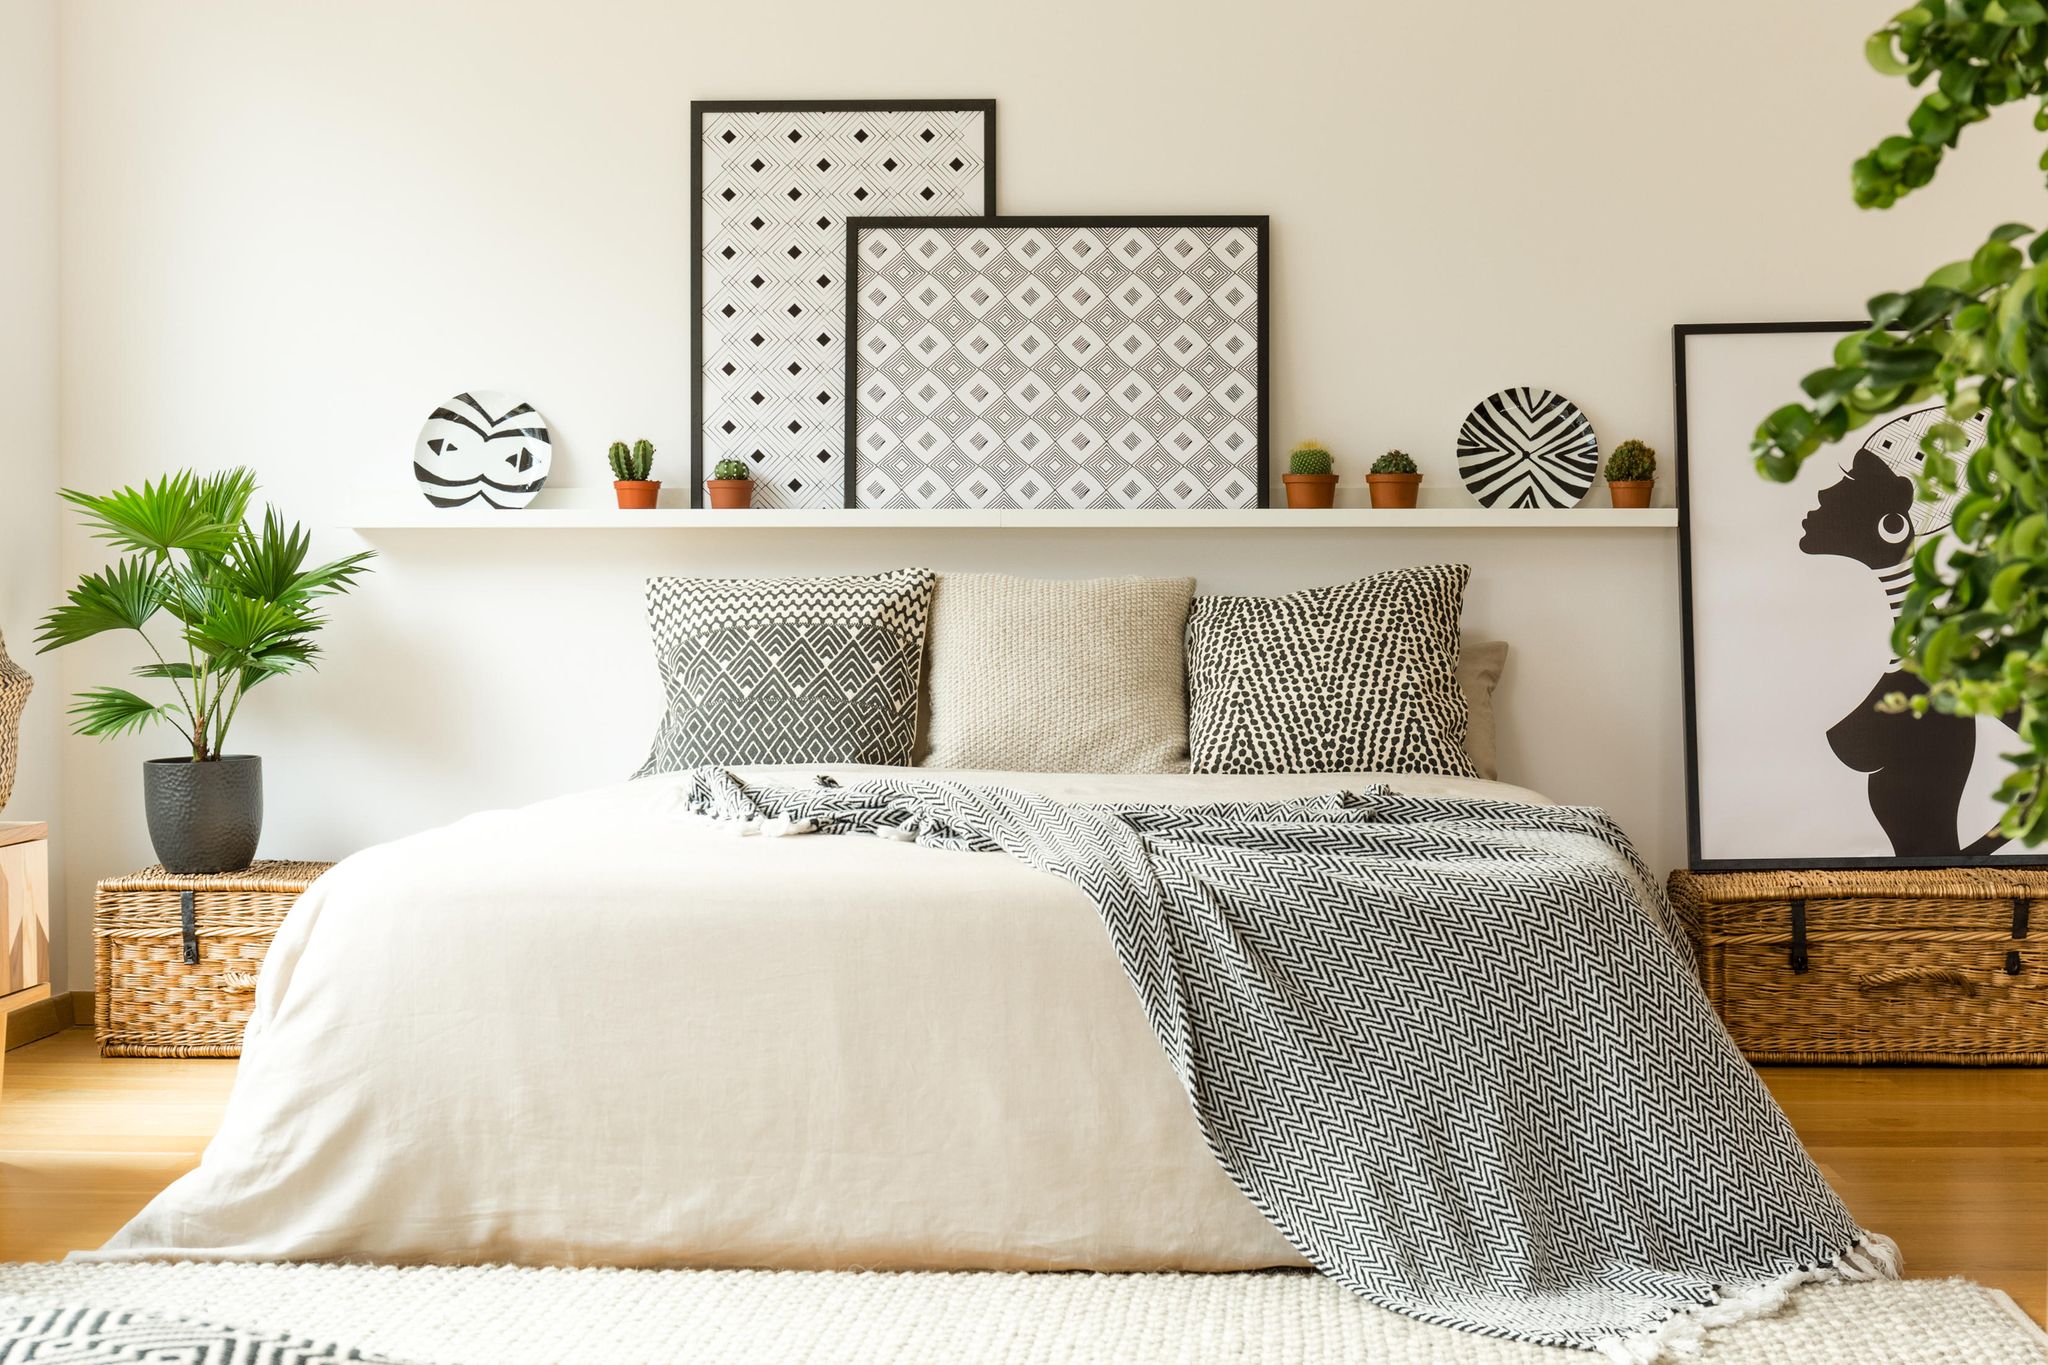 Coole Dinge für Ihr Zimmer 6 Ausgefallene süße Sachen für Ihr Schlafzimmer  Machen Sie Ihr Zimmer fantastisch cool - Design Diy